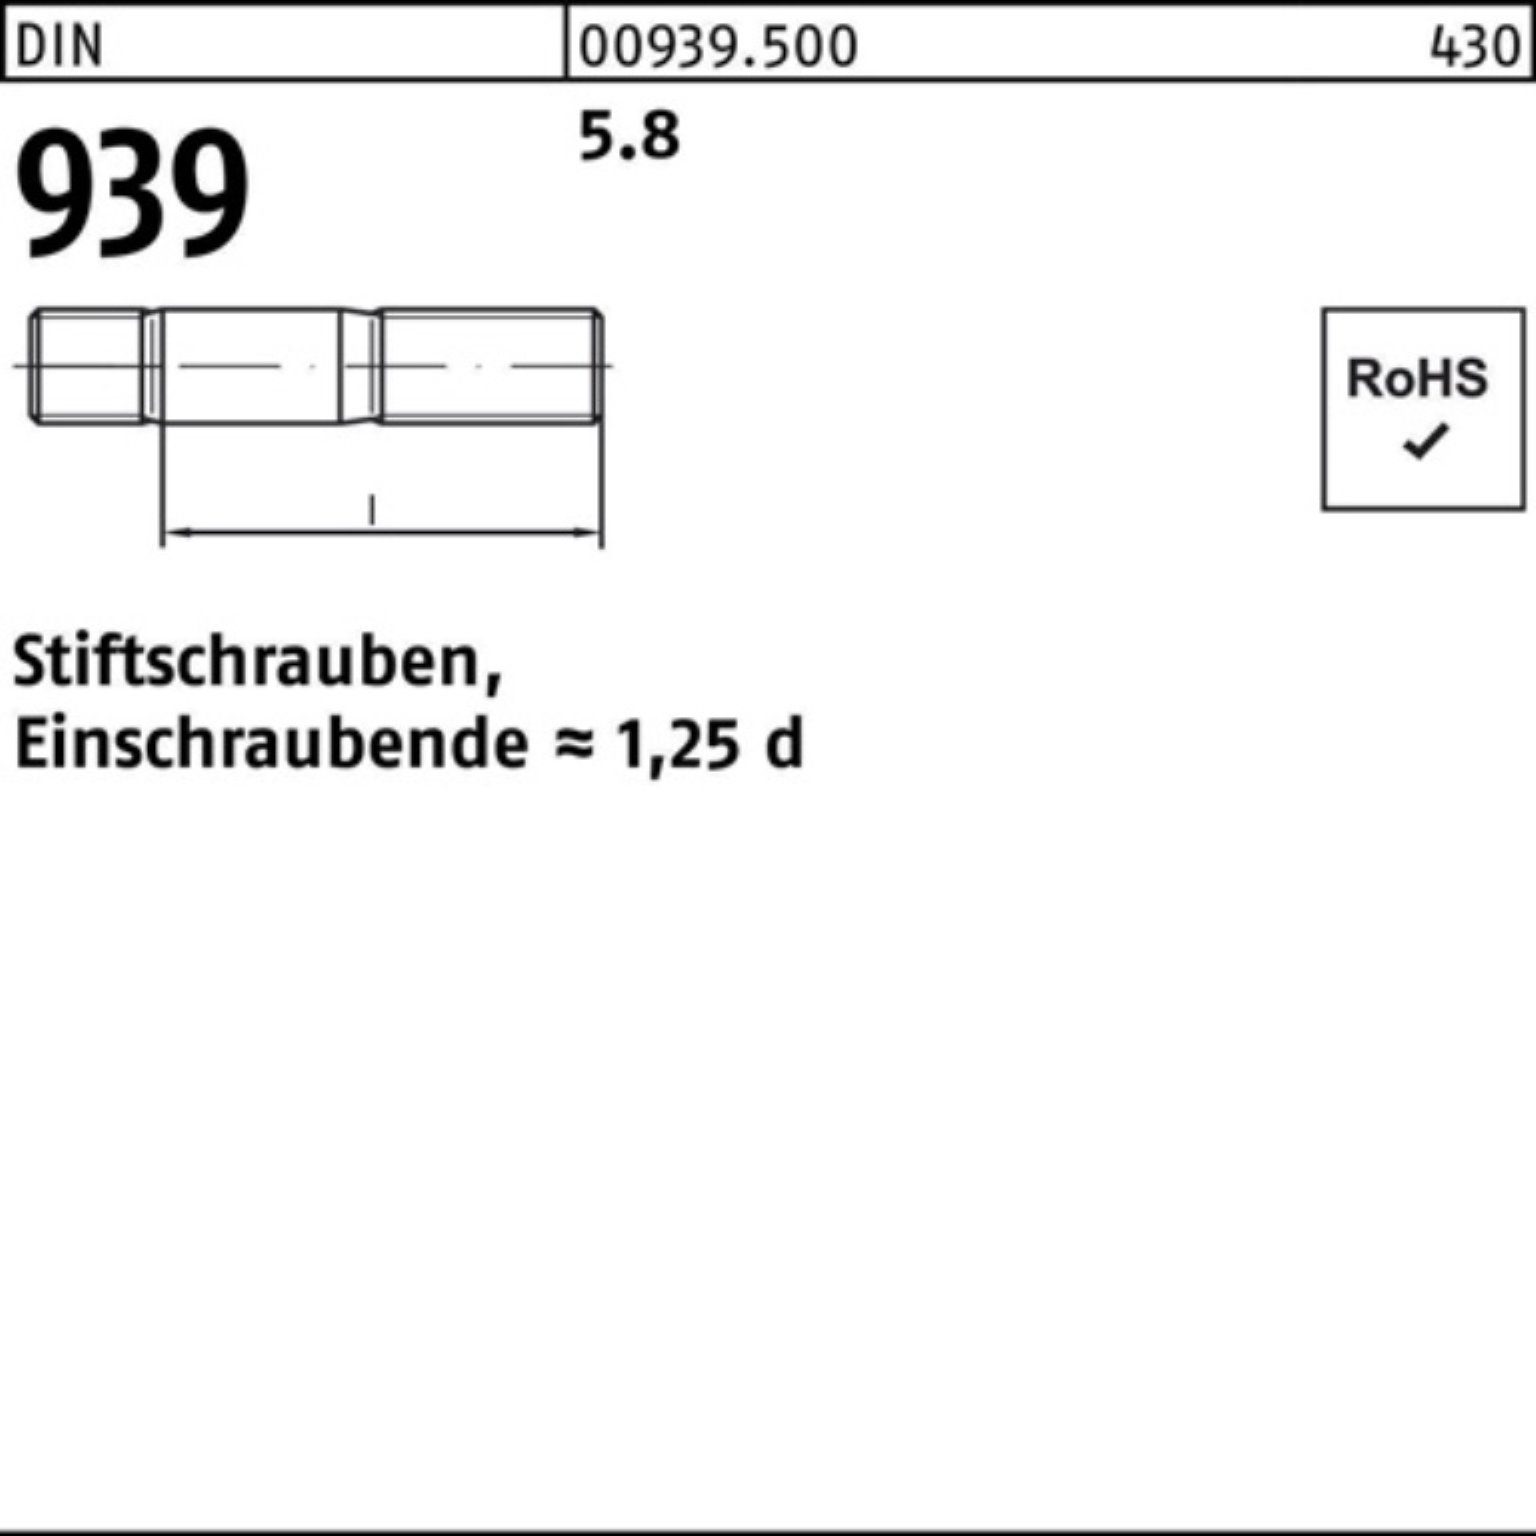 S DIN Stiftschraube 939 Stiftschraube 10 Reyher 5.8 95 100er Pack M20x Einschraubende=1,25d